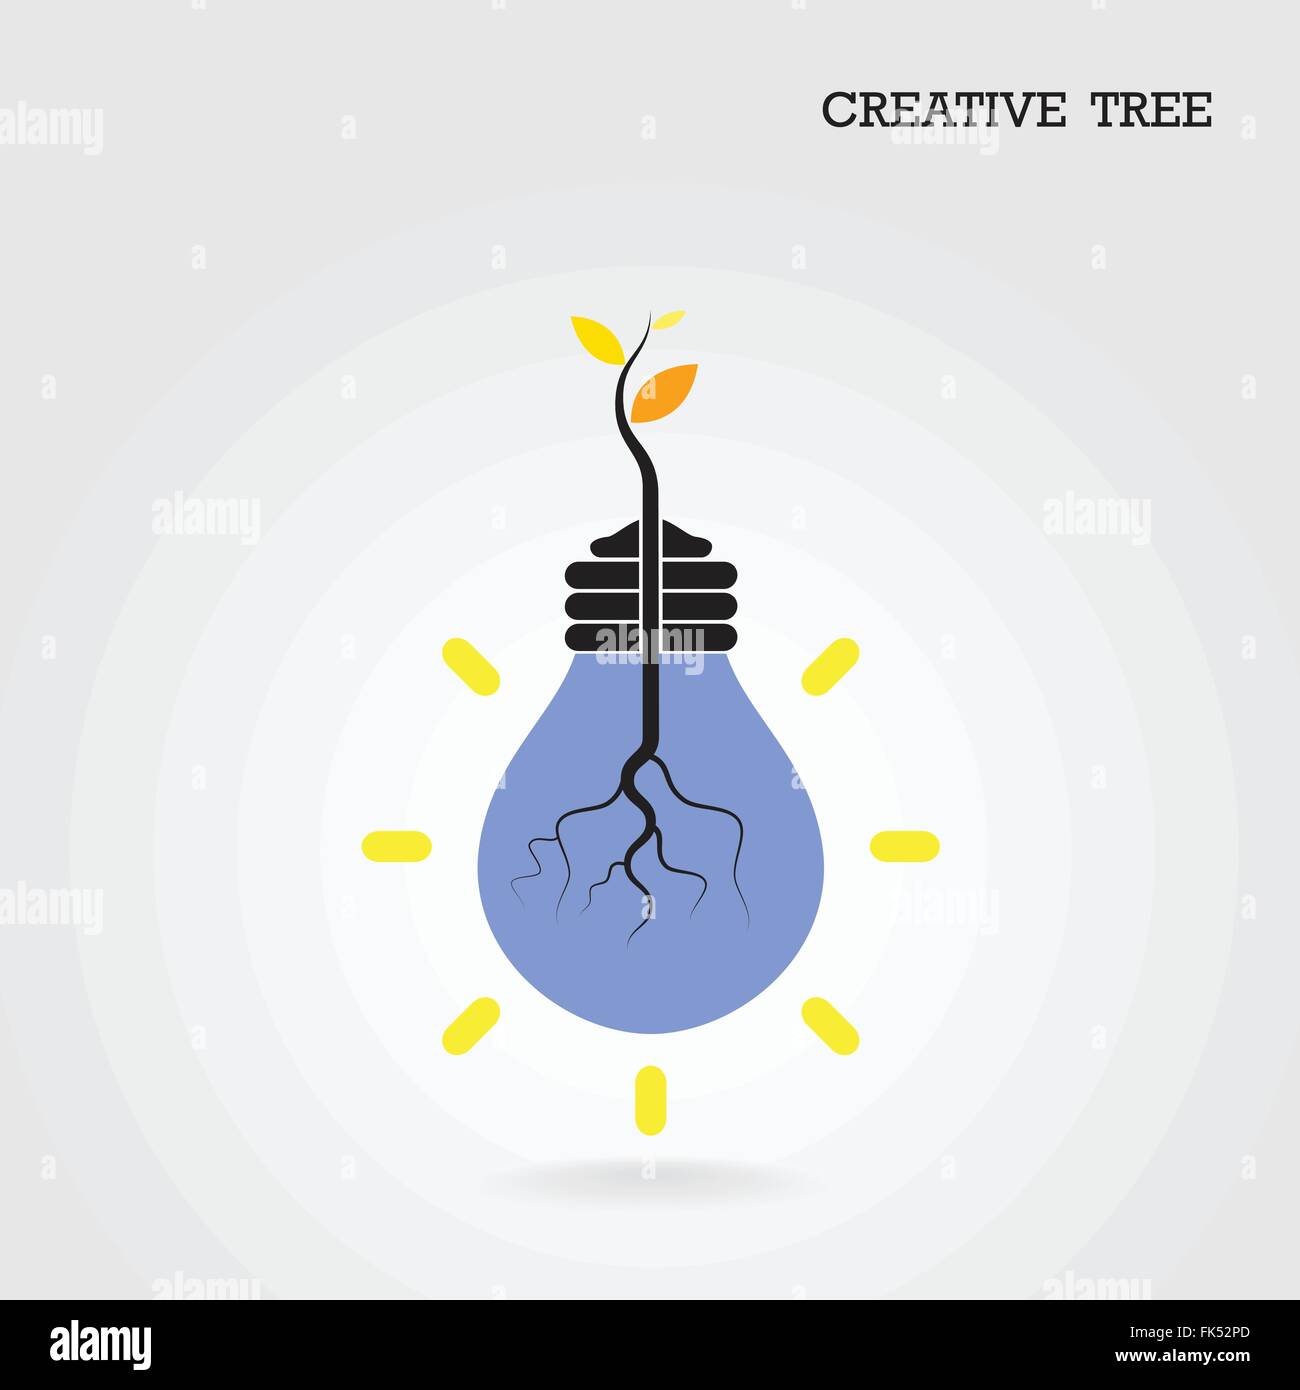 Kreativ und wissen Baum-Konzept. Bildung und Wirtschaft zu unterzeichnen. Vektor-illustration Stock Vektor